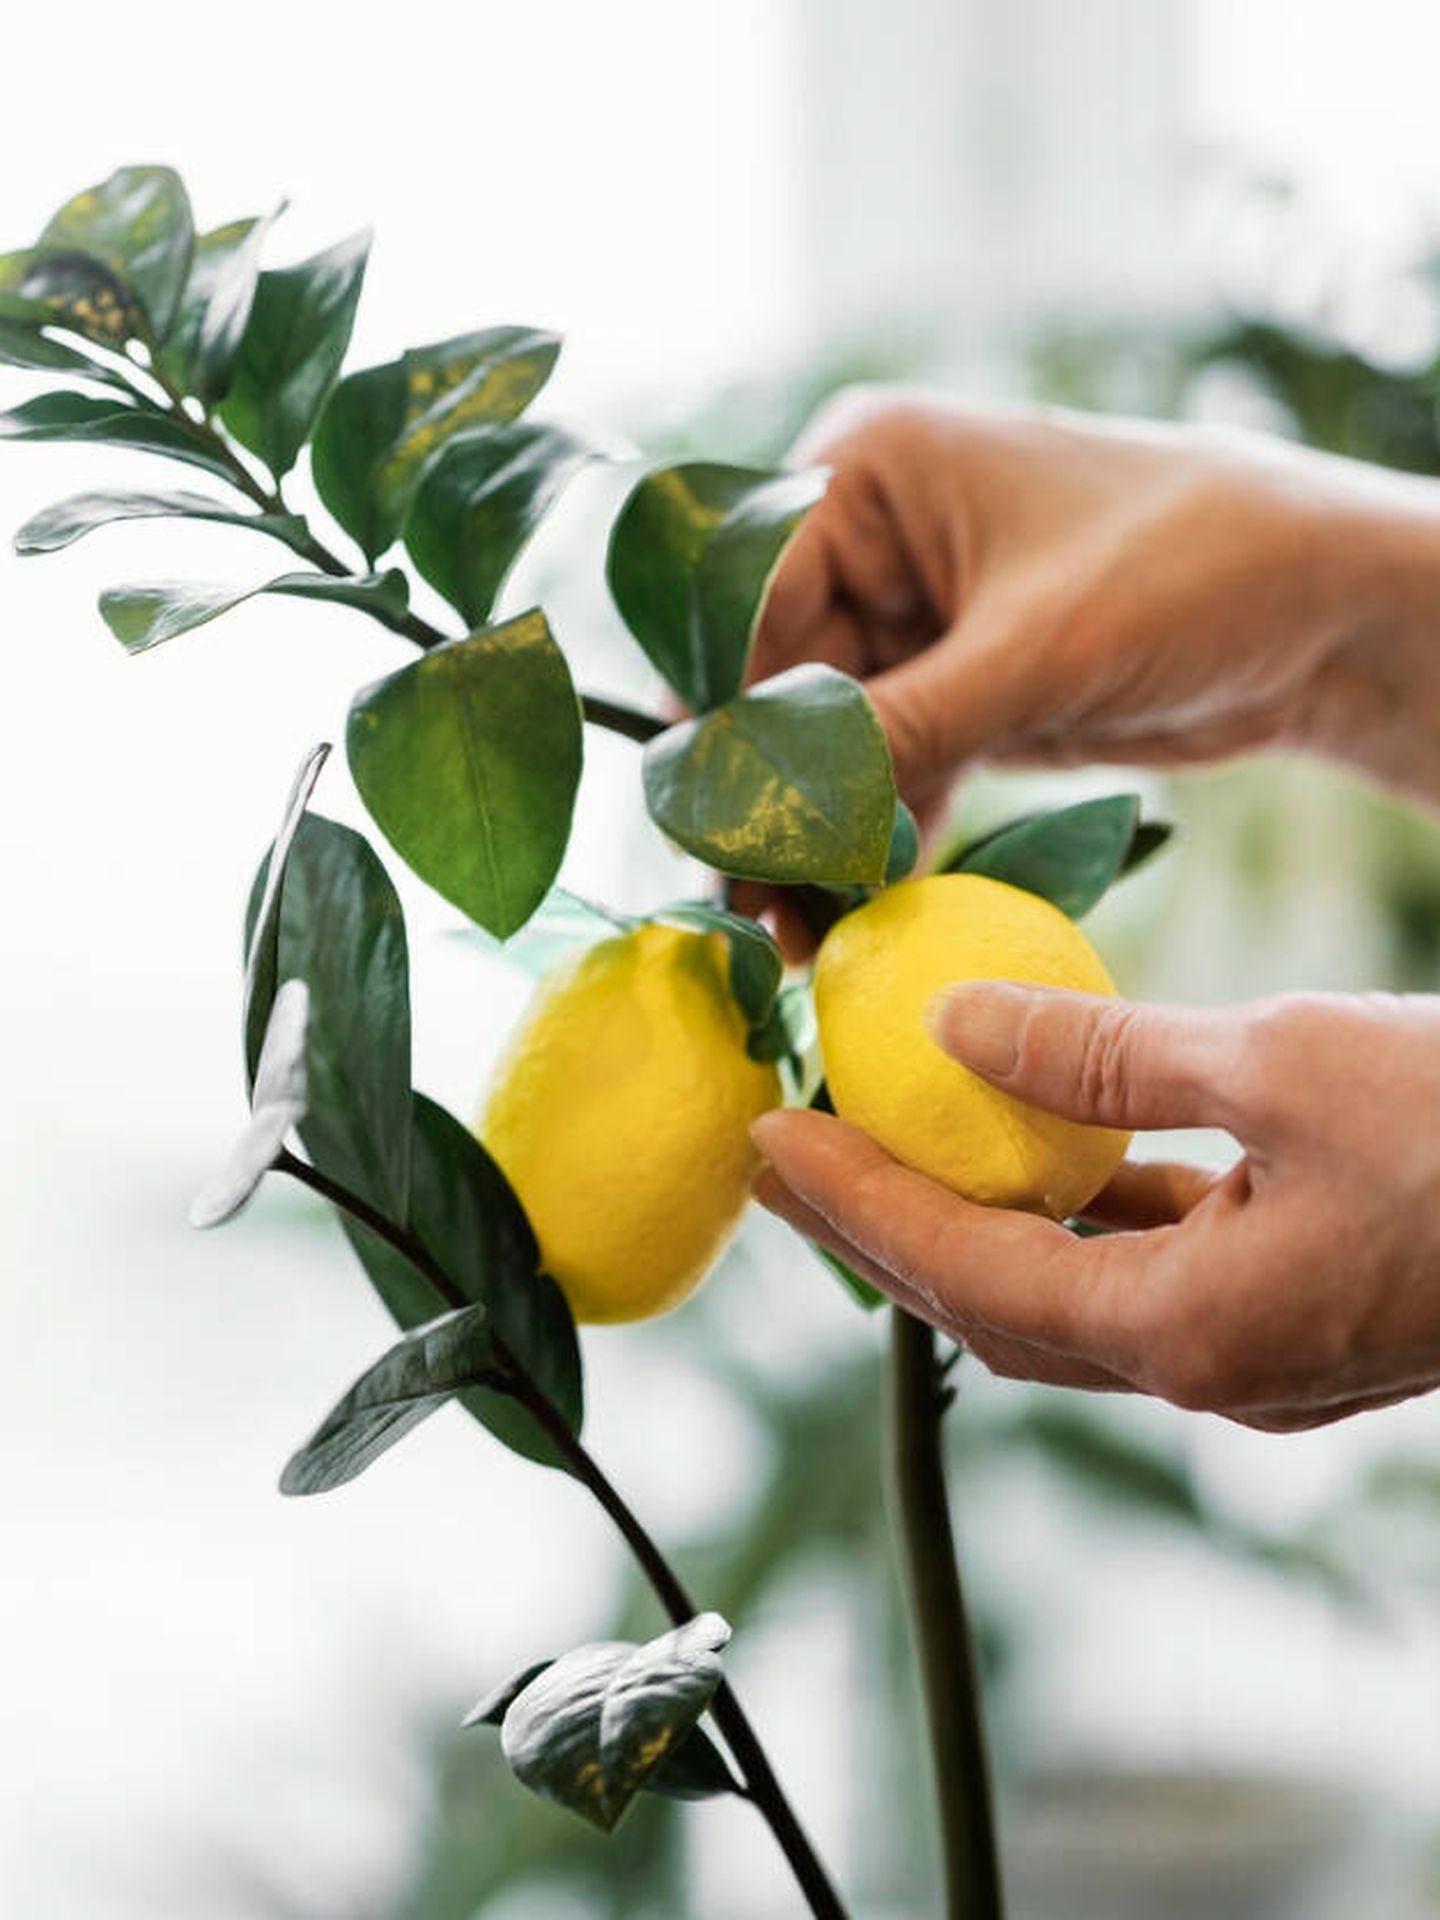 Lo ideal es extraer las semillas de un limón ecológico, maduro y saludable. (Freepik)